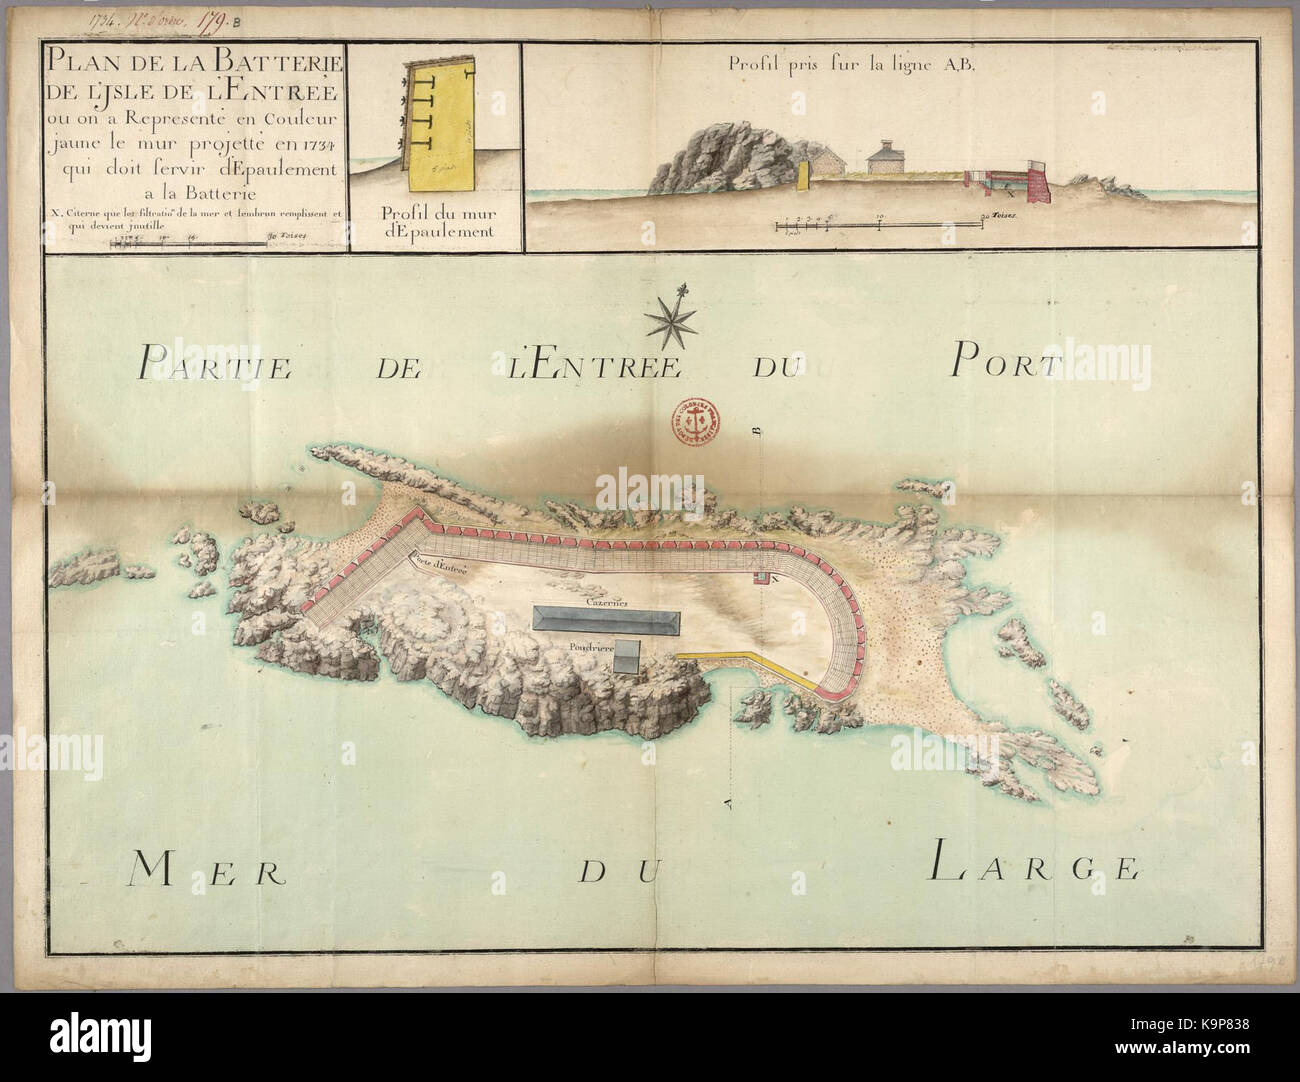 Plan de la Batterie de l Isle de l Entree ou on a represente en couleur jaune le mur projete en 1734 qui doit servir d epaulement a la Batterie Stock Photo